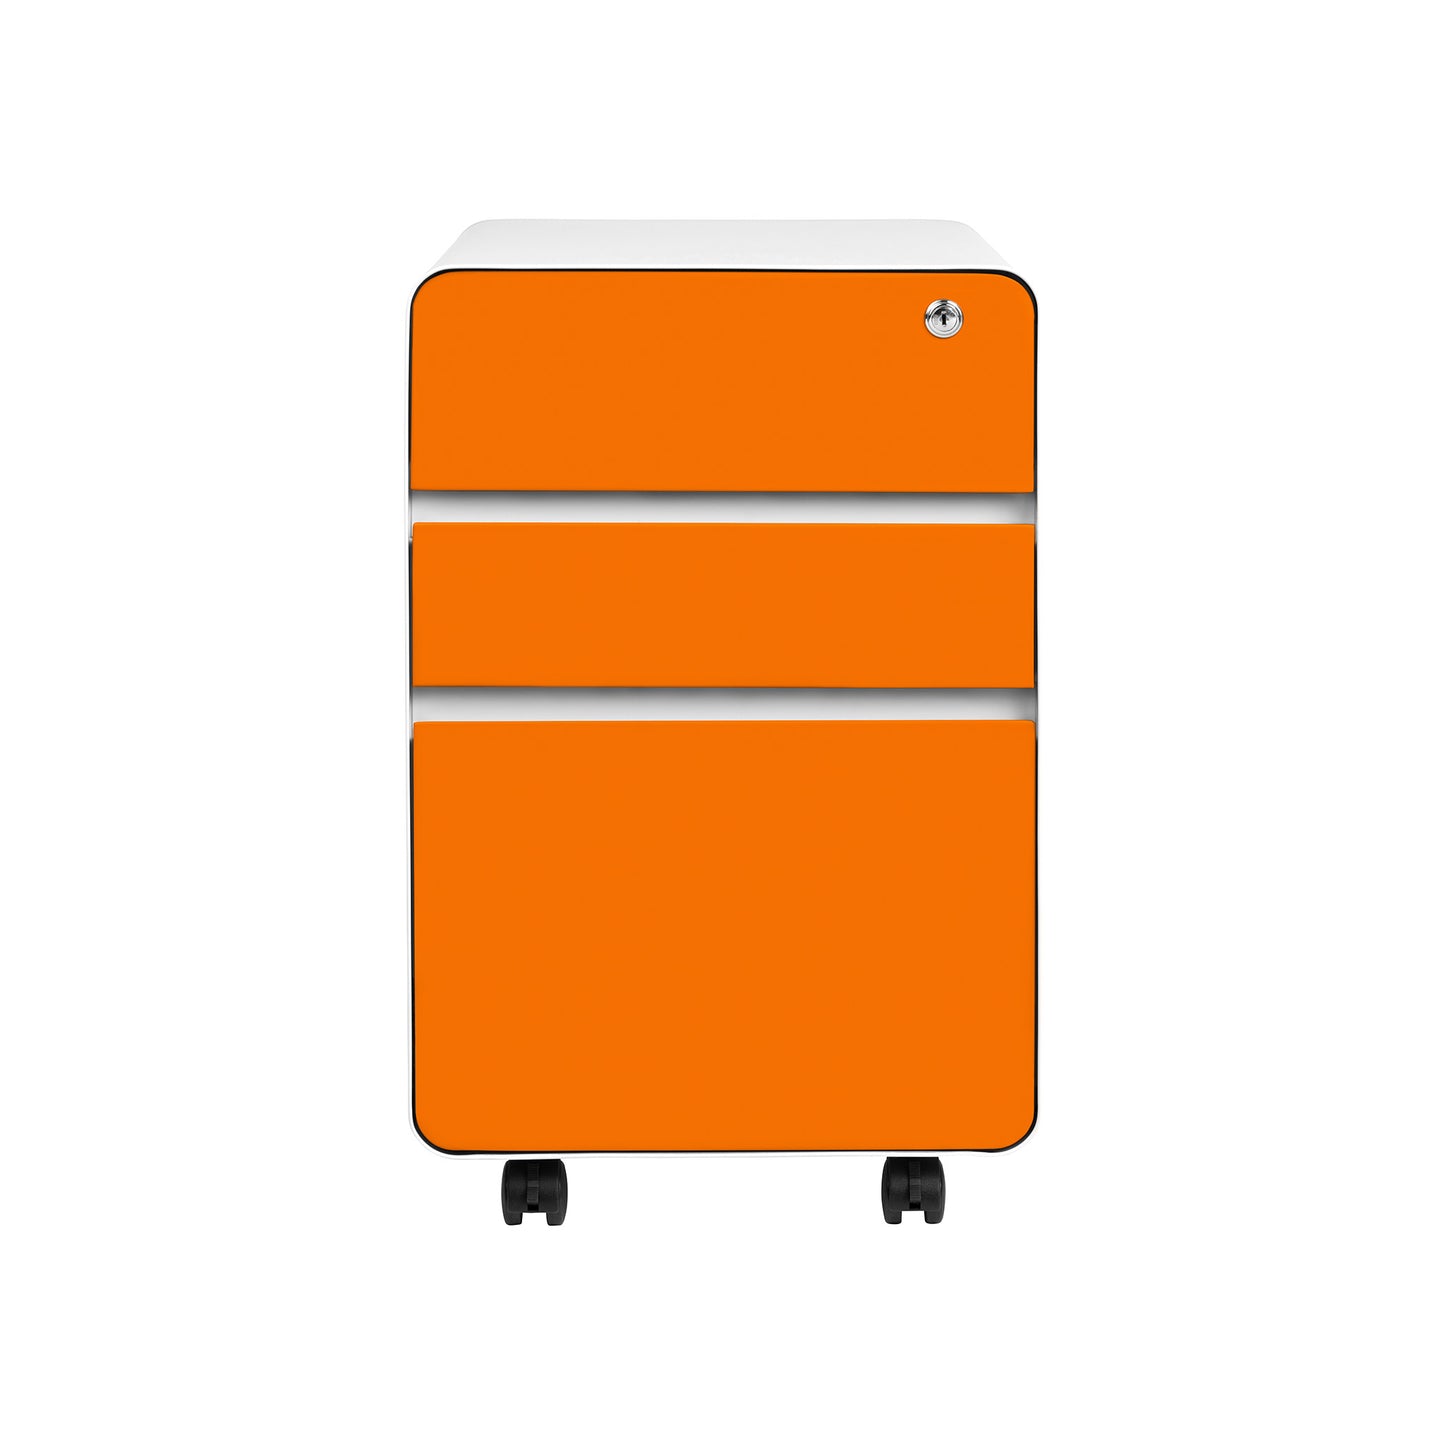 Stockpile Flat 3-Drawer File Cabinet (Orange)